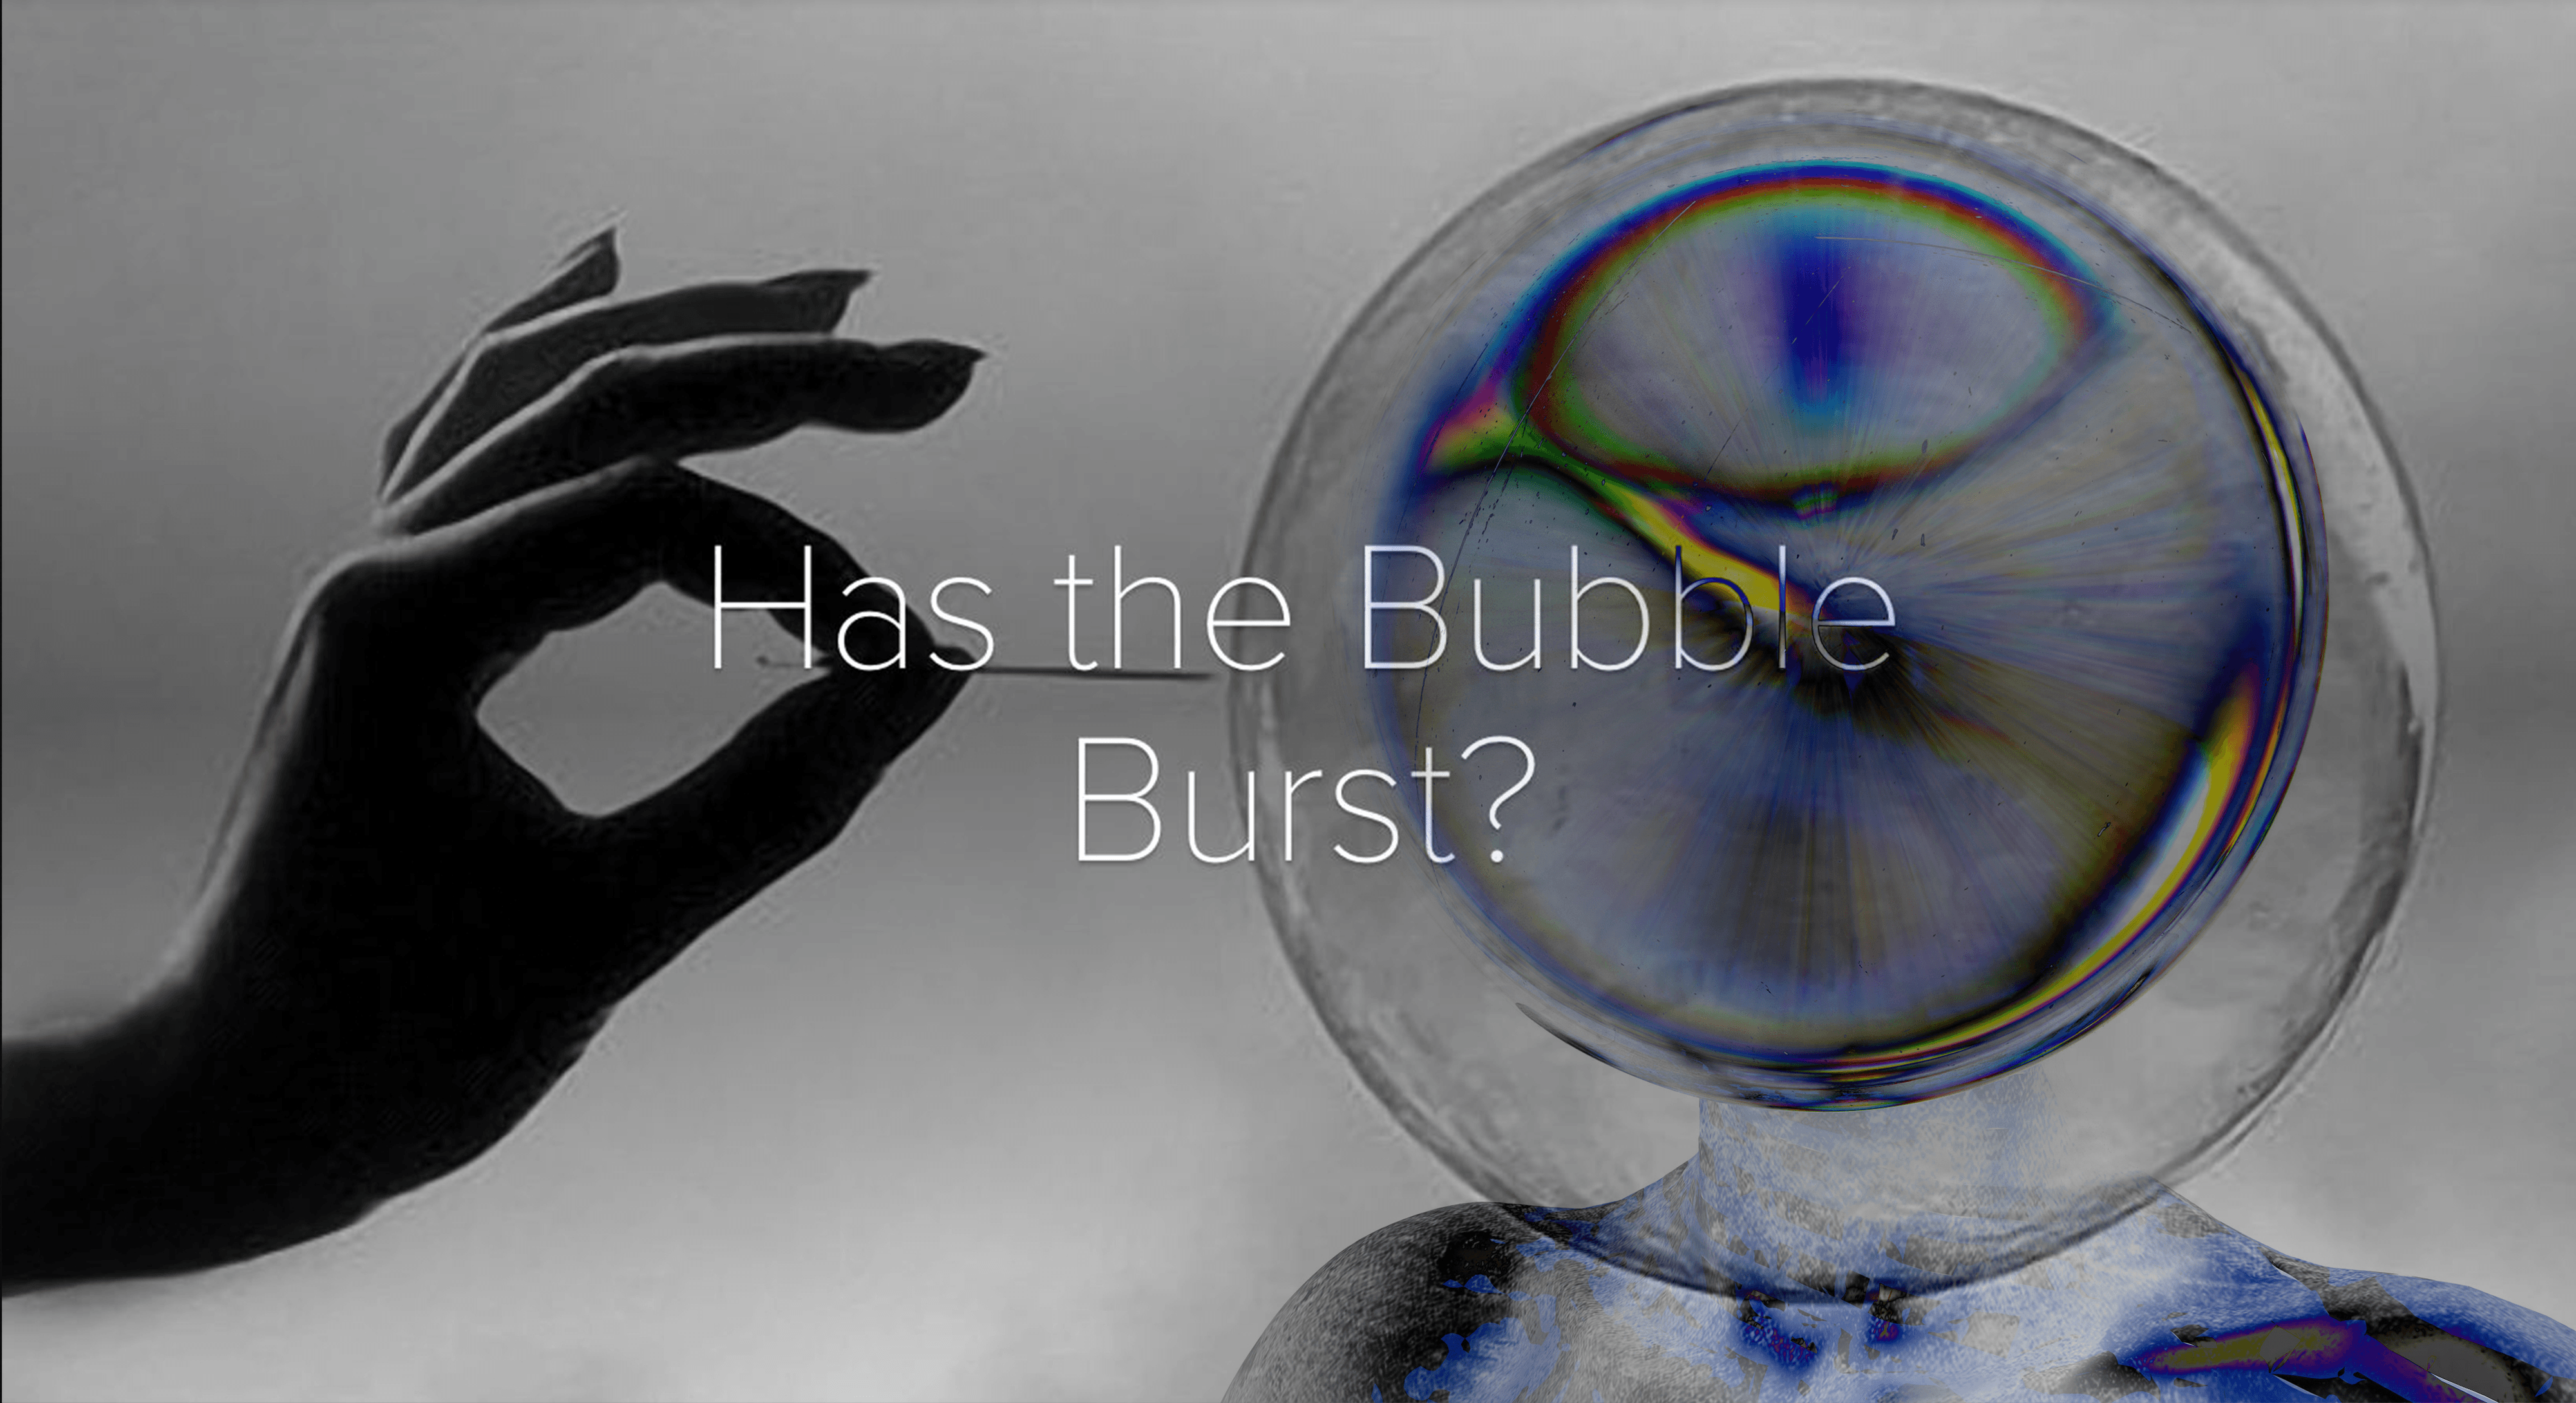 Has the bubble burst?